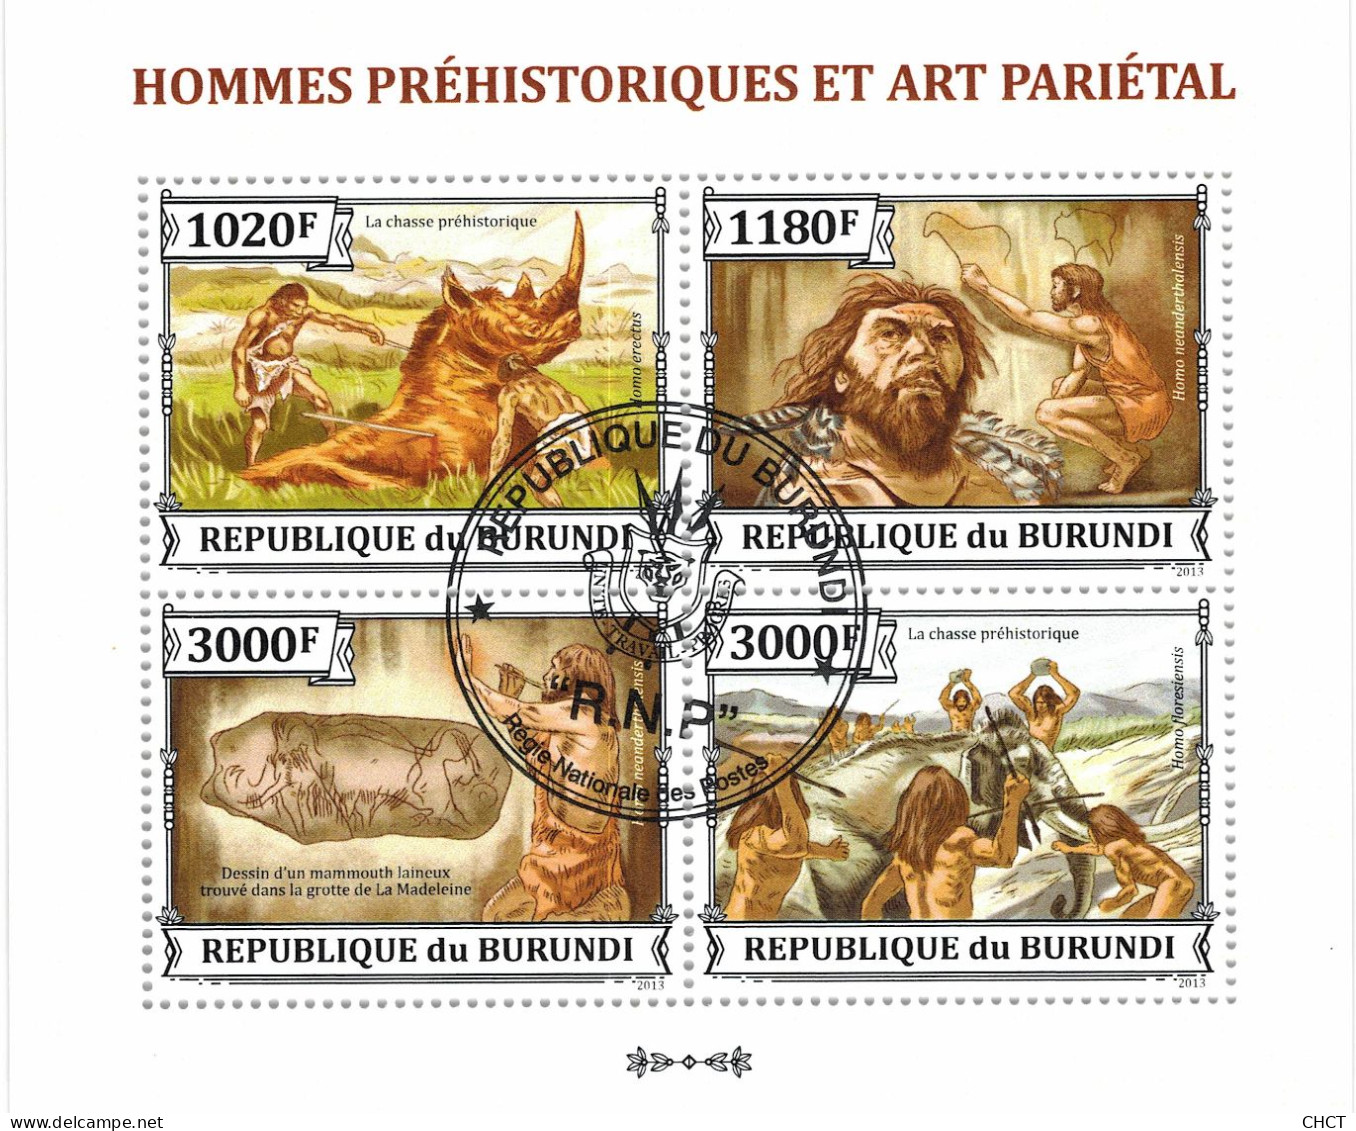 CHCT65 - Prehistoric Humans & Art, History, Stamp Mini Sheet, Used CTO, 2013, Burundi - Gebruikt